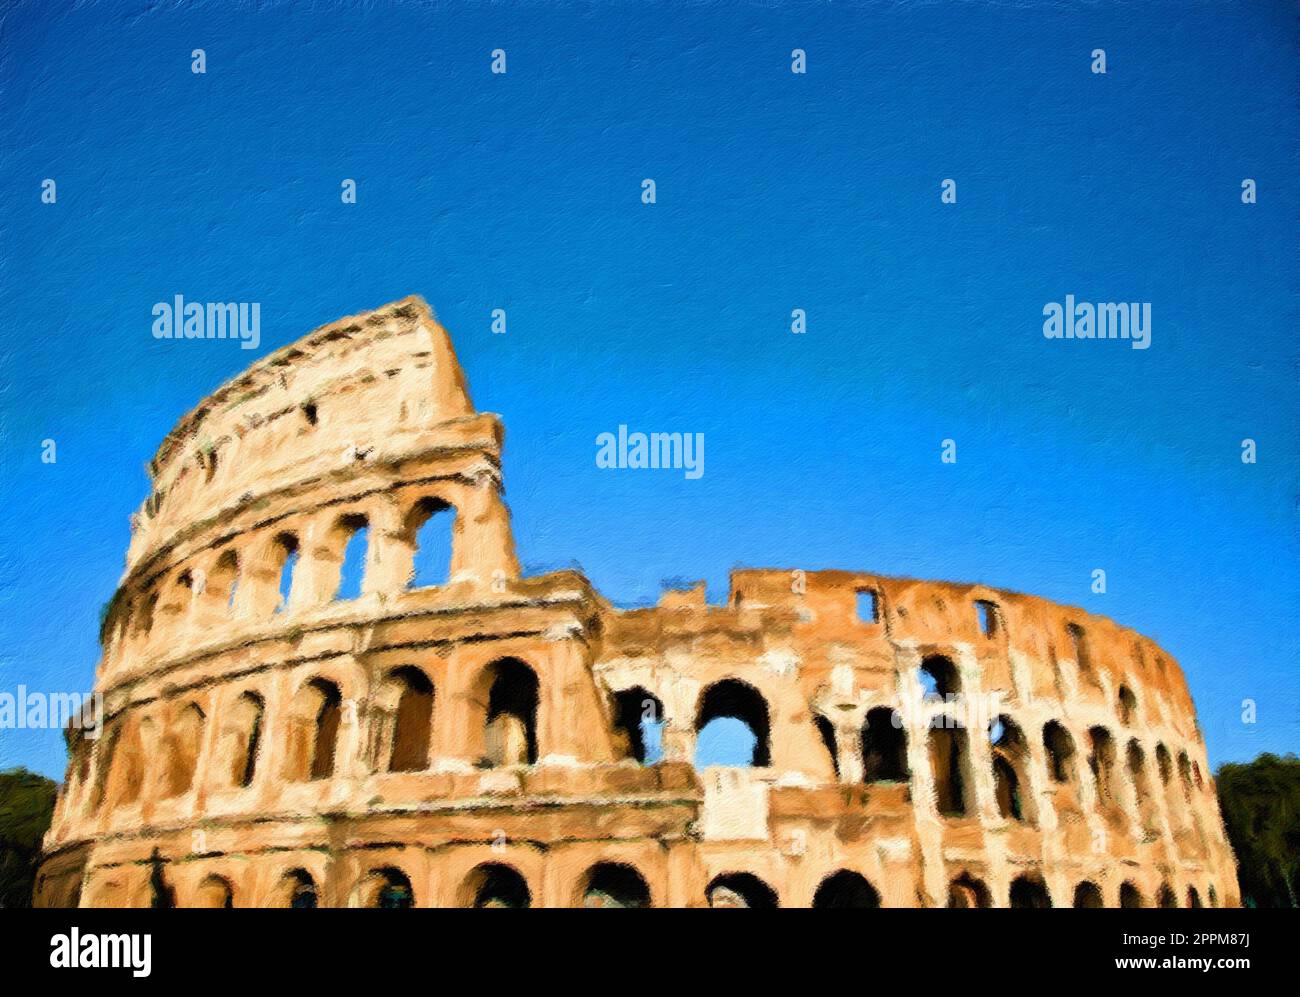 Rome, Italie - Colisée sur ciel bleu - Illustration créative, design impressionniste vintage. Banque D'Images